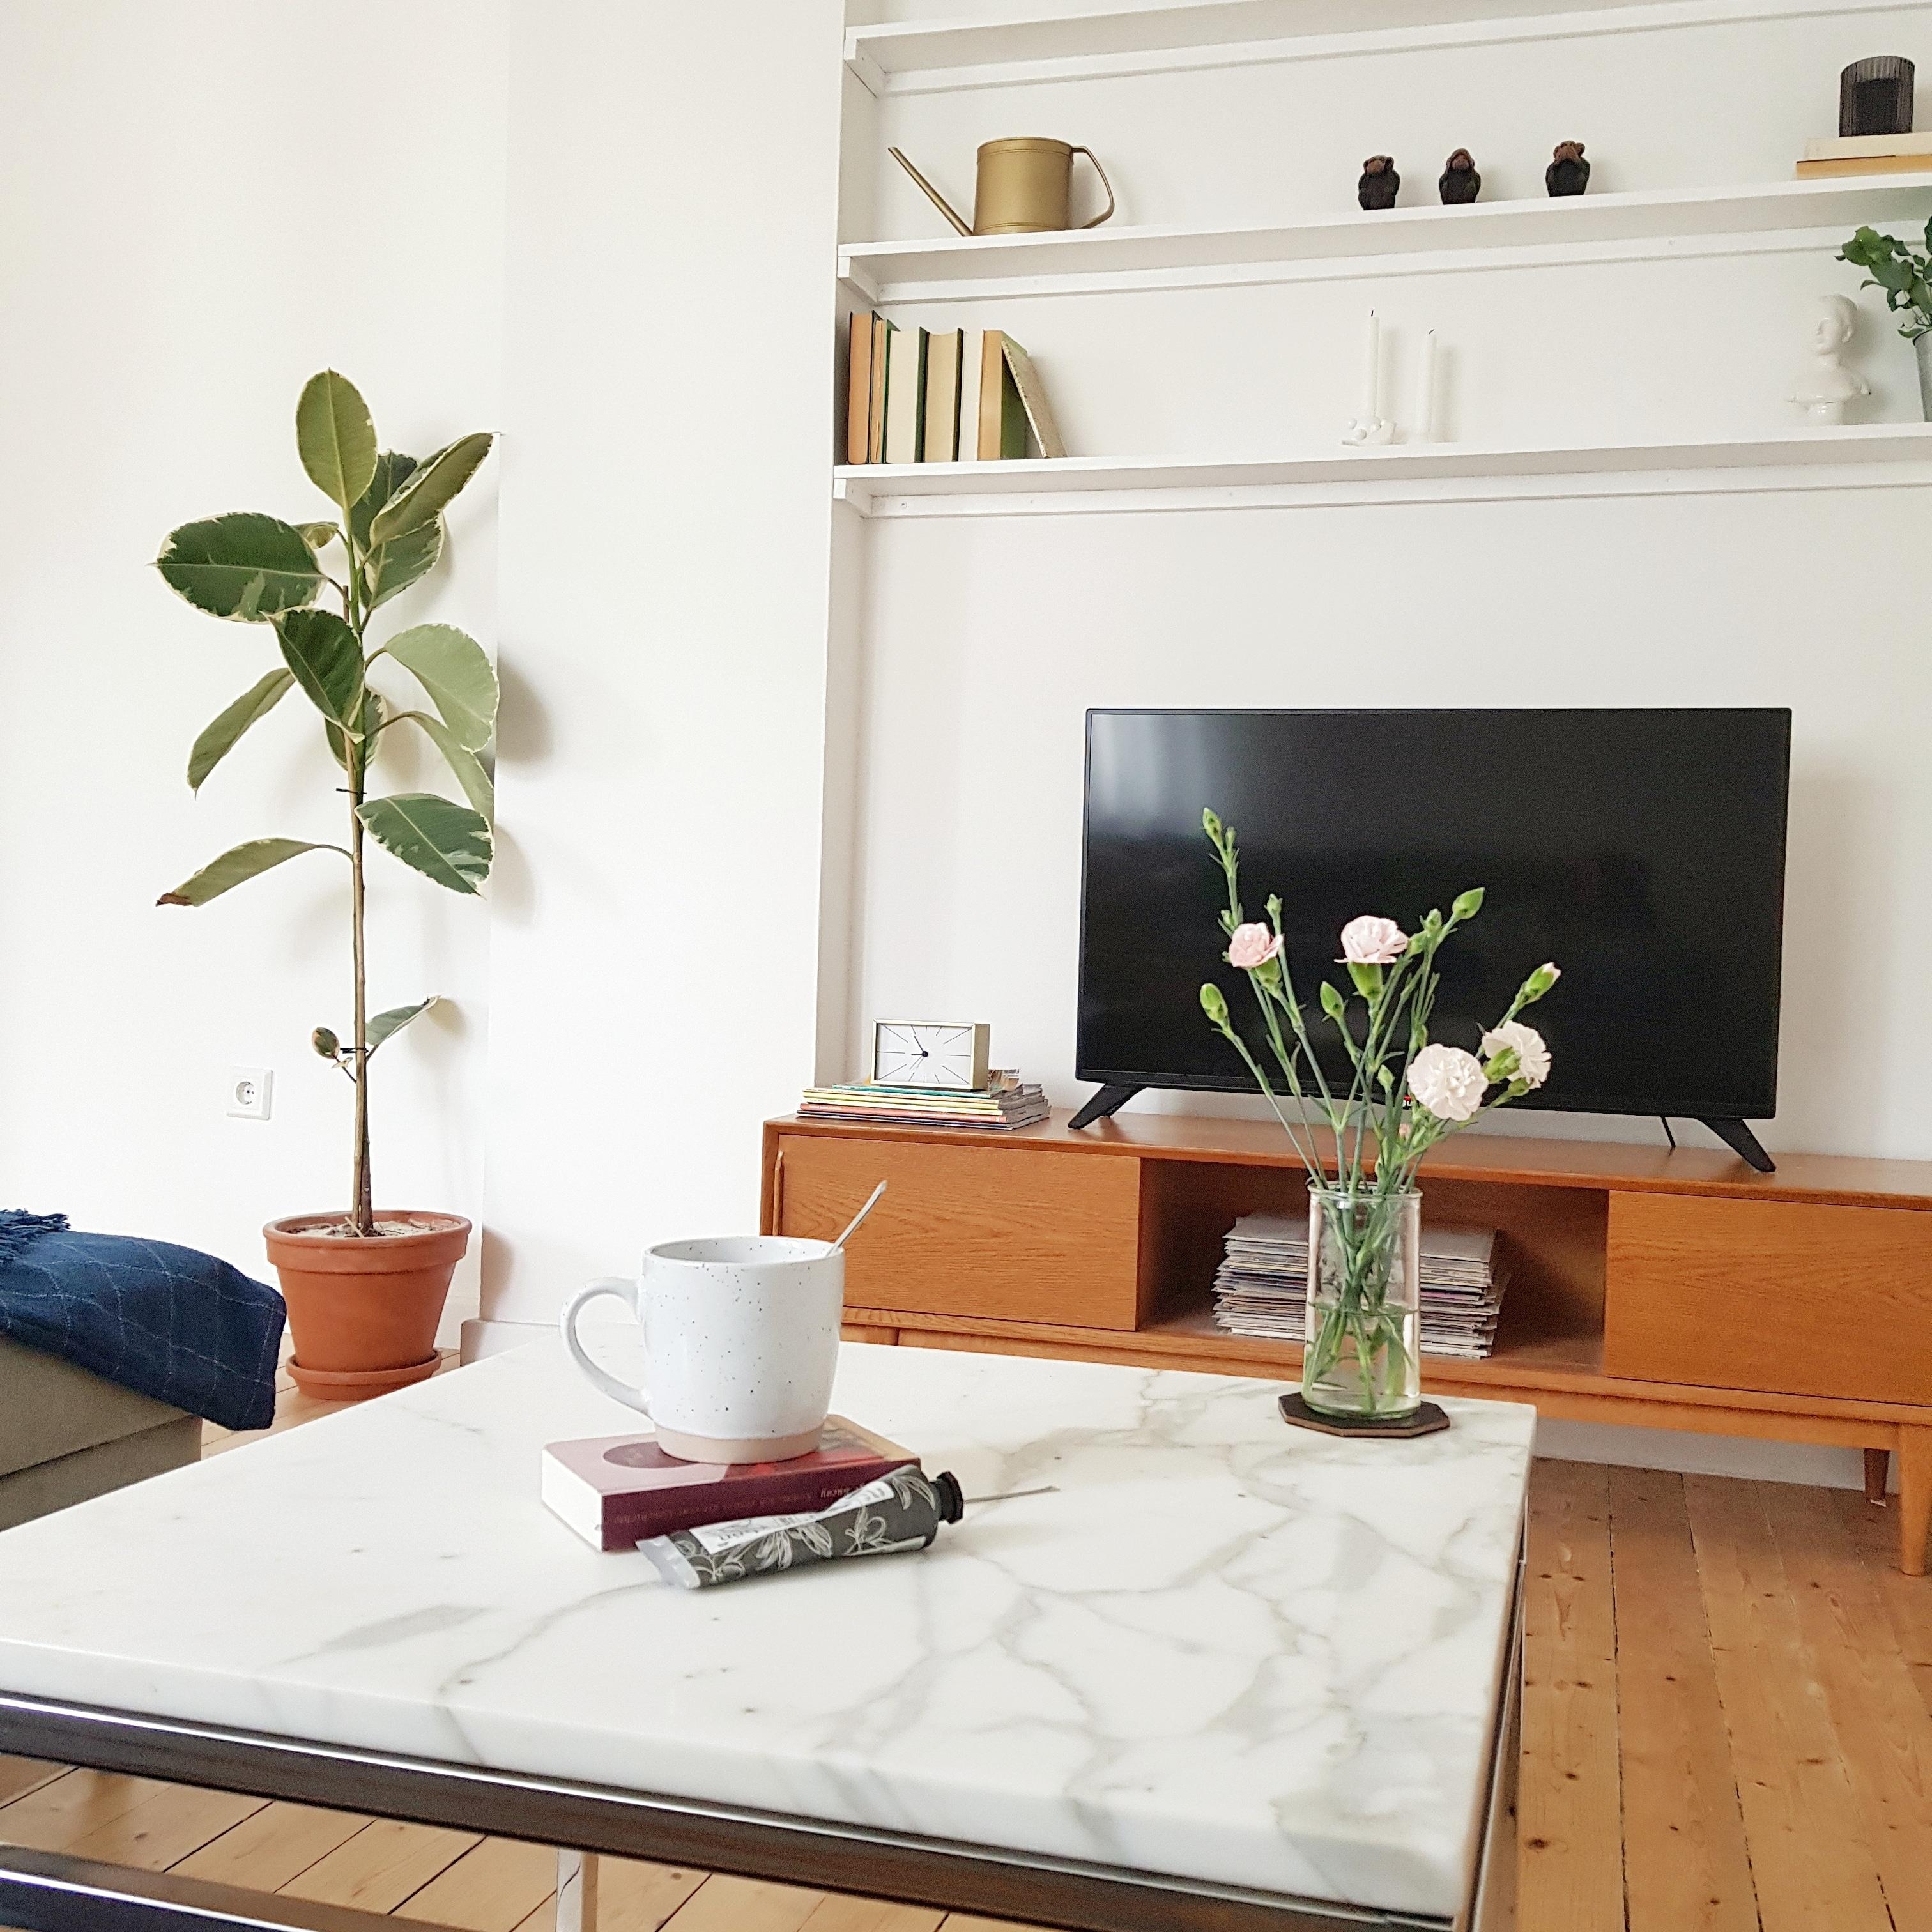 Liebe unsere neuen Regale über dem Fernseher #wohnzimmer #einbauregale #altbau #vintage #cosyhome #freshflowers 